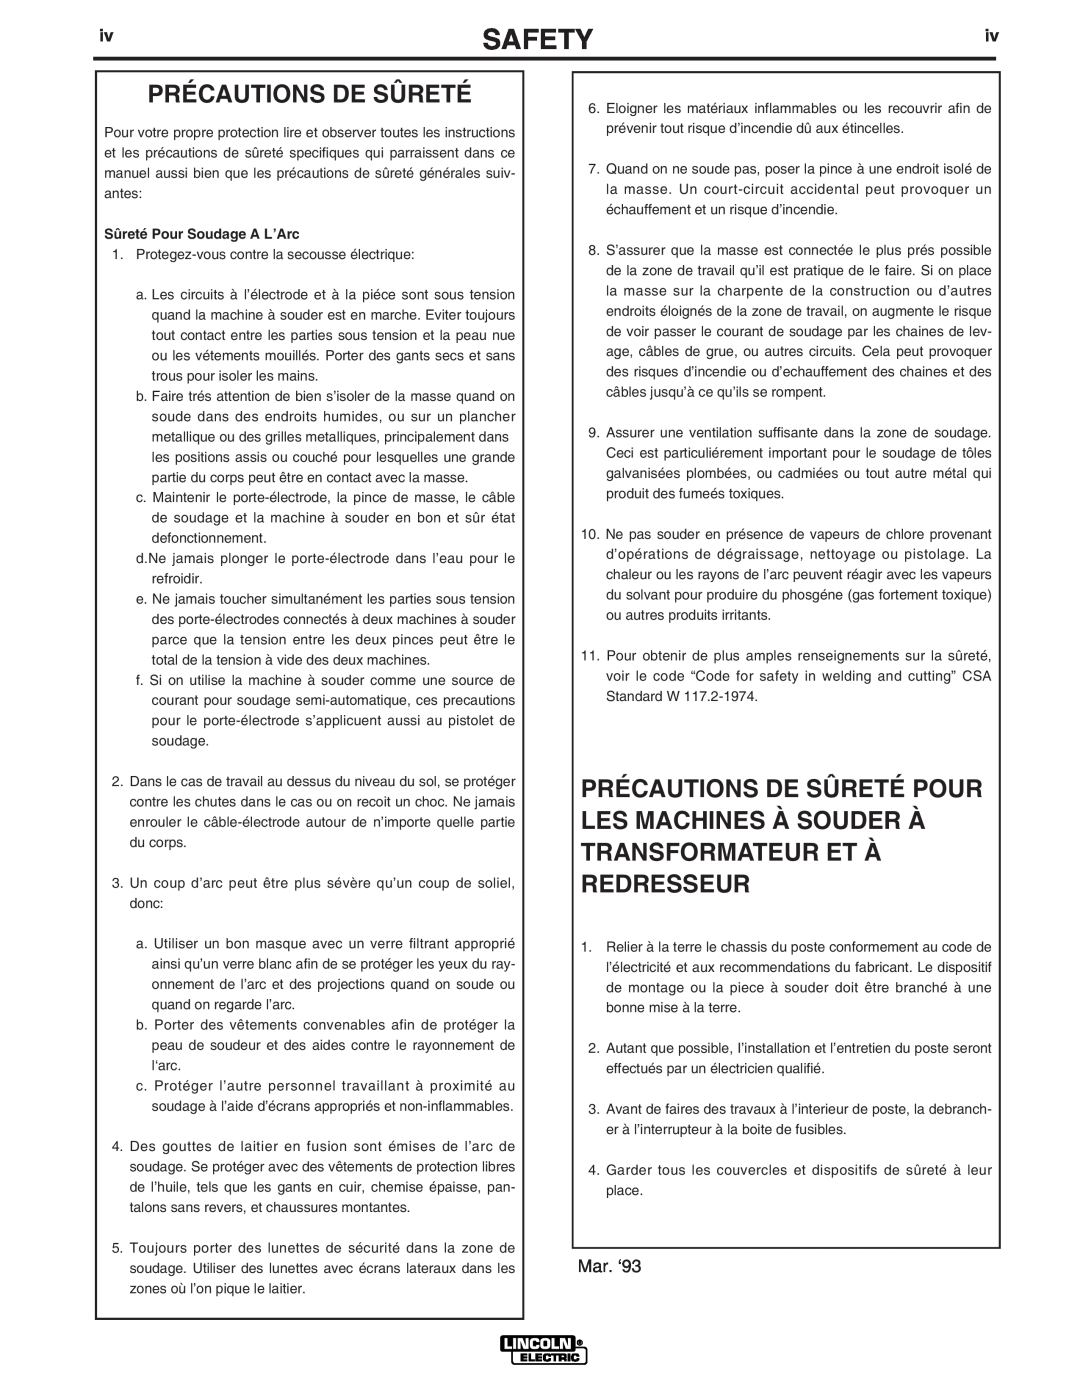 Lincoln Electric IM794 manual Précautions De Sûreté, Safety, Mar. ‘93 